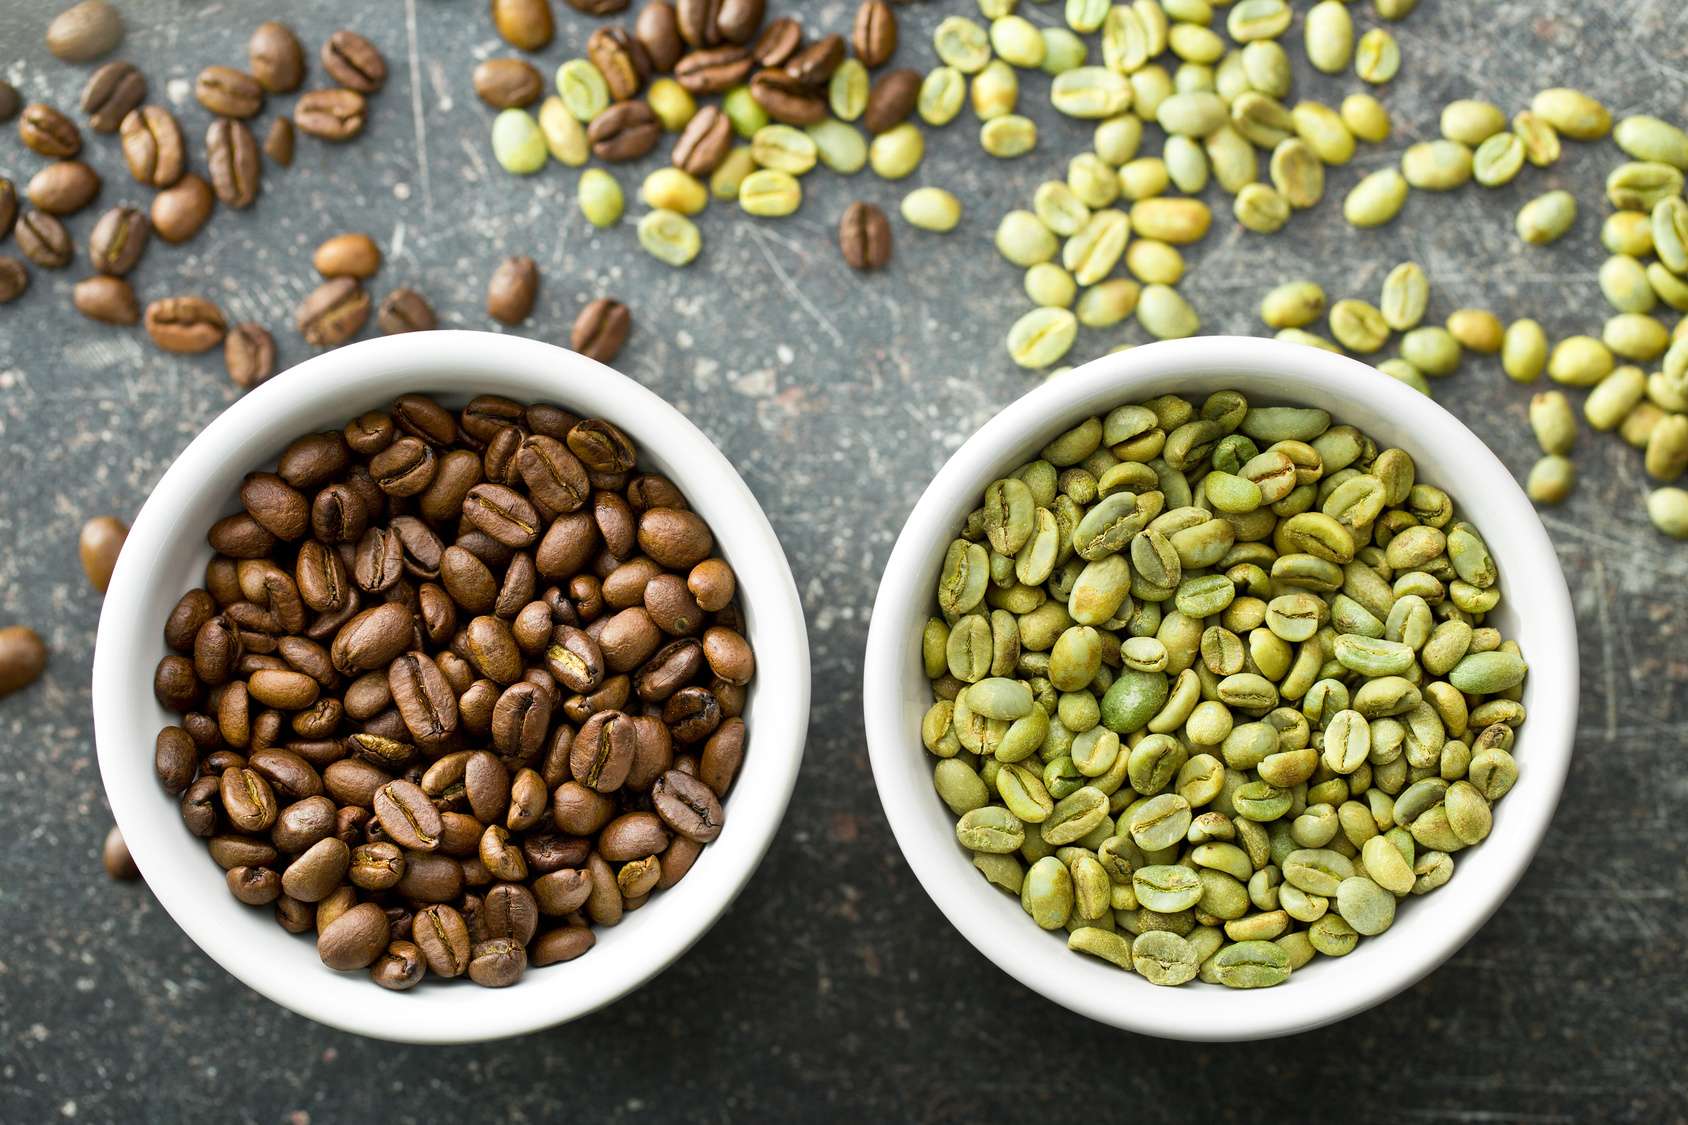 Quelle est la couleur naturelle du grain de café ?